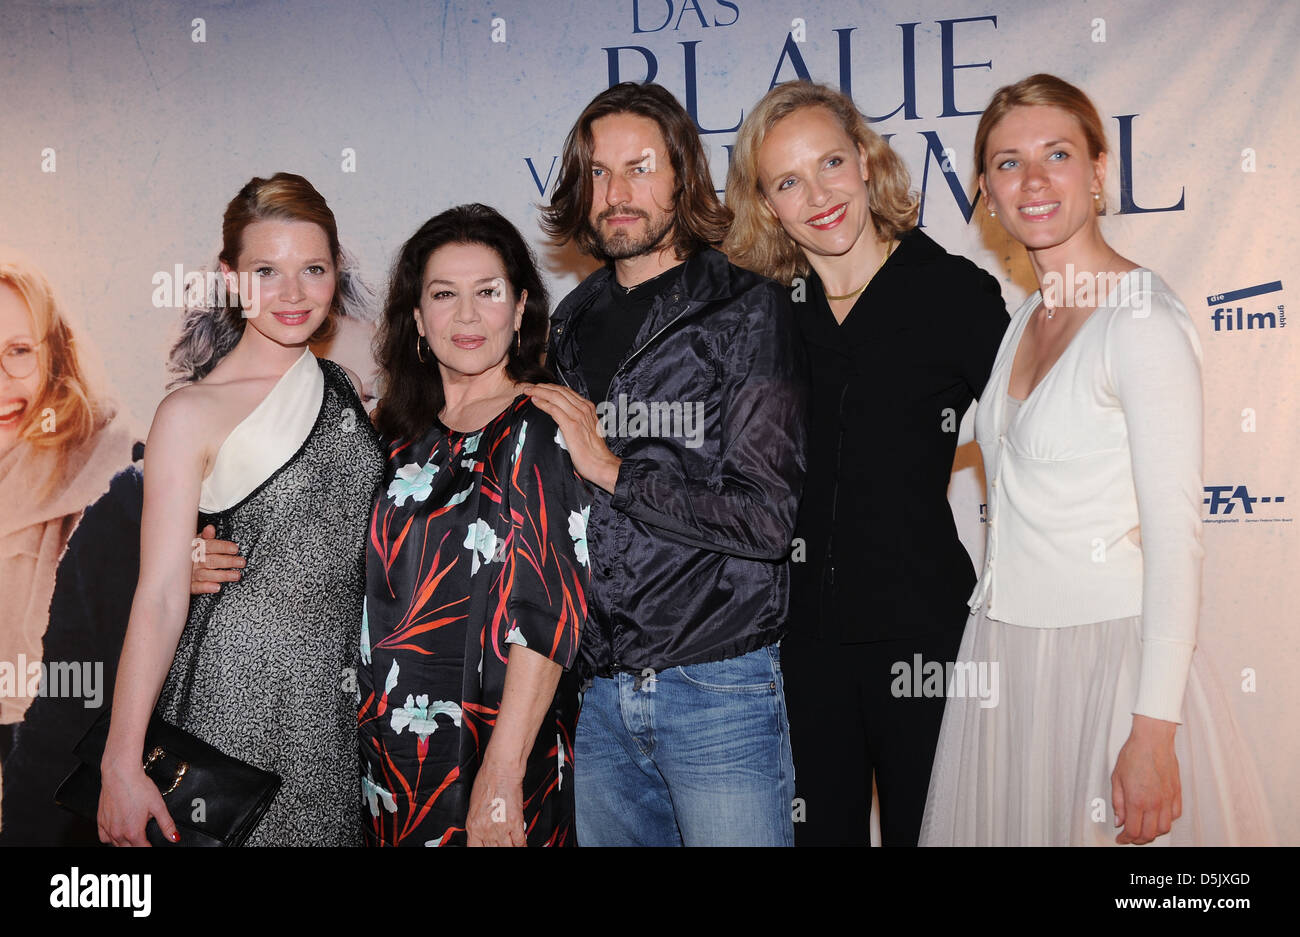 Karoline Herfurth, Hannelore Elsner, Hans Steinblichler, Juliane Koehler und Juta Vanaga an der Berlin-premiere von "Das Blaue Stockfoto